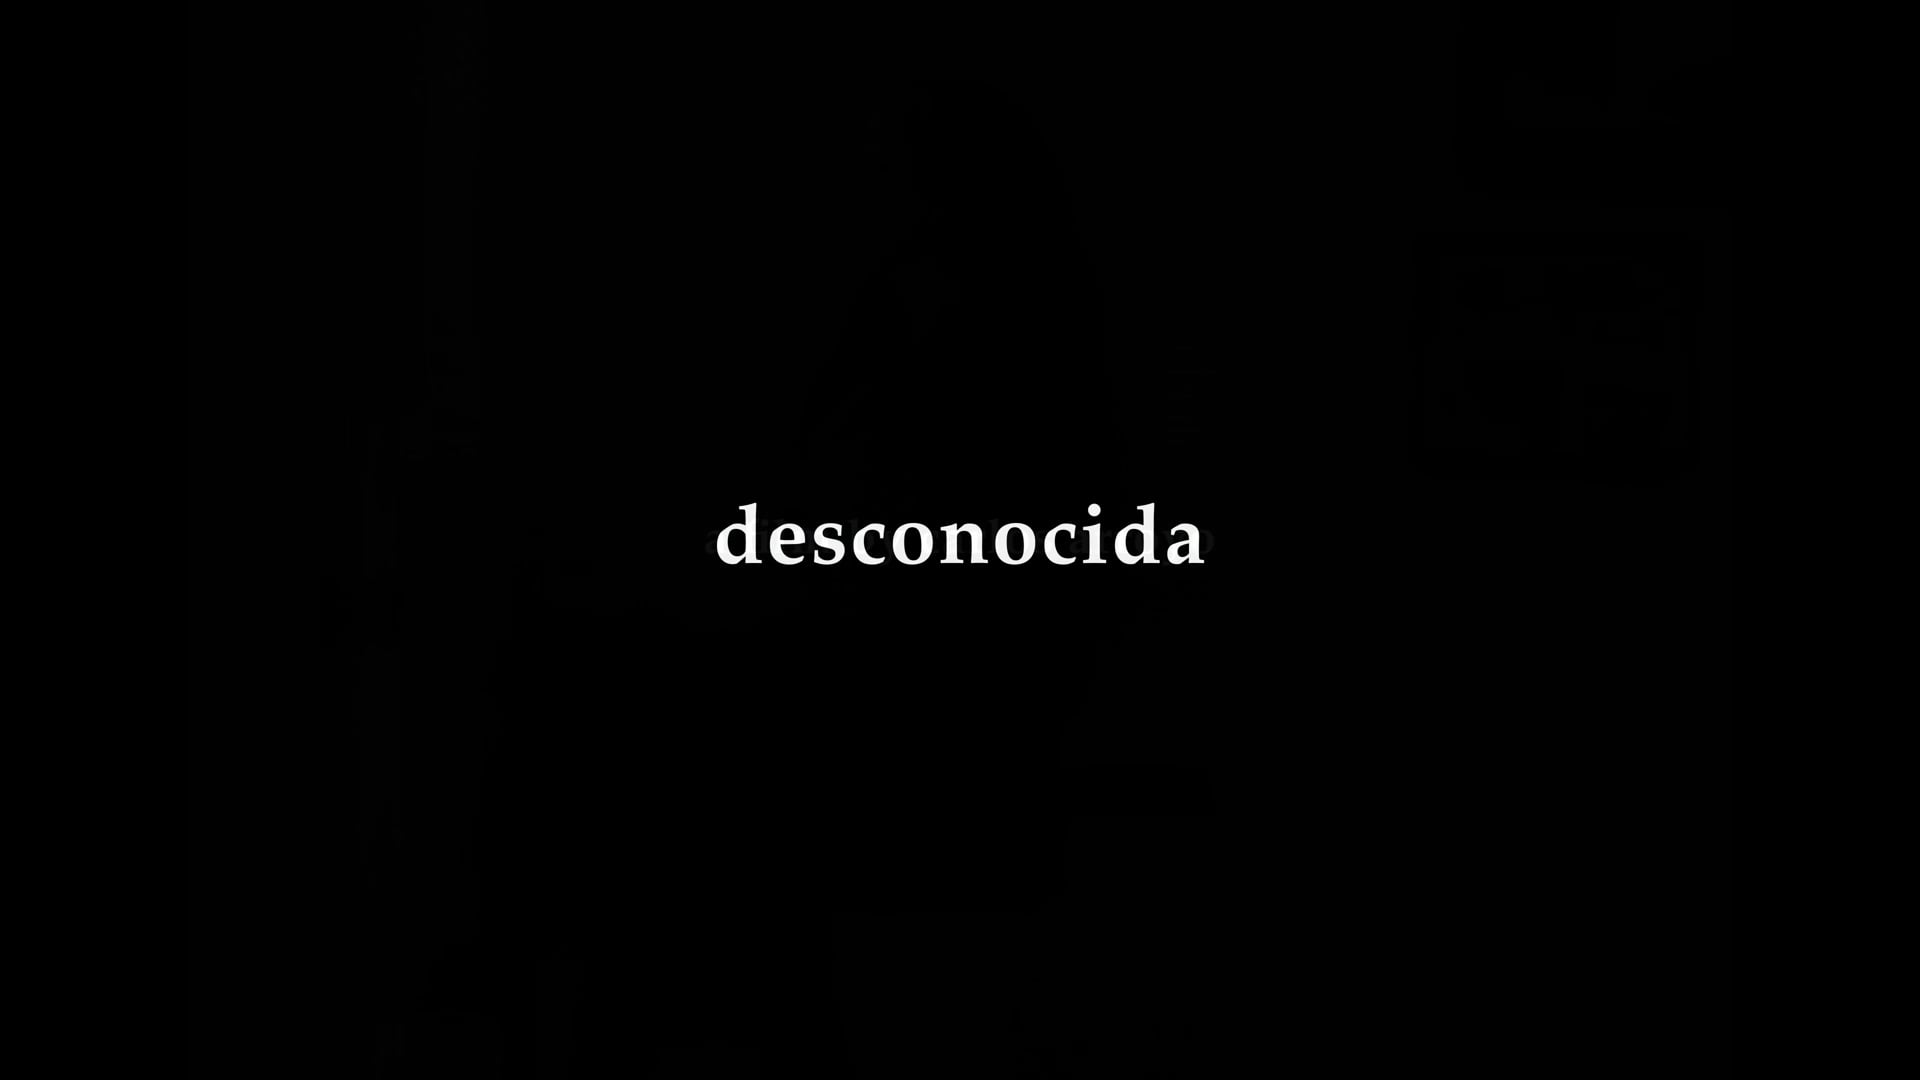 desnocida - Trailer